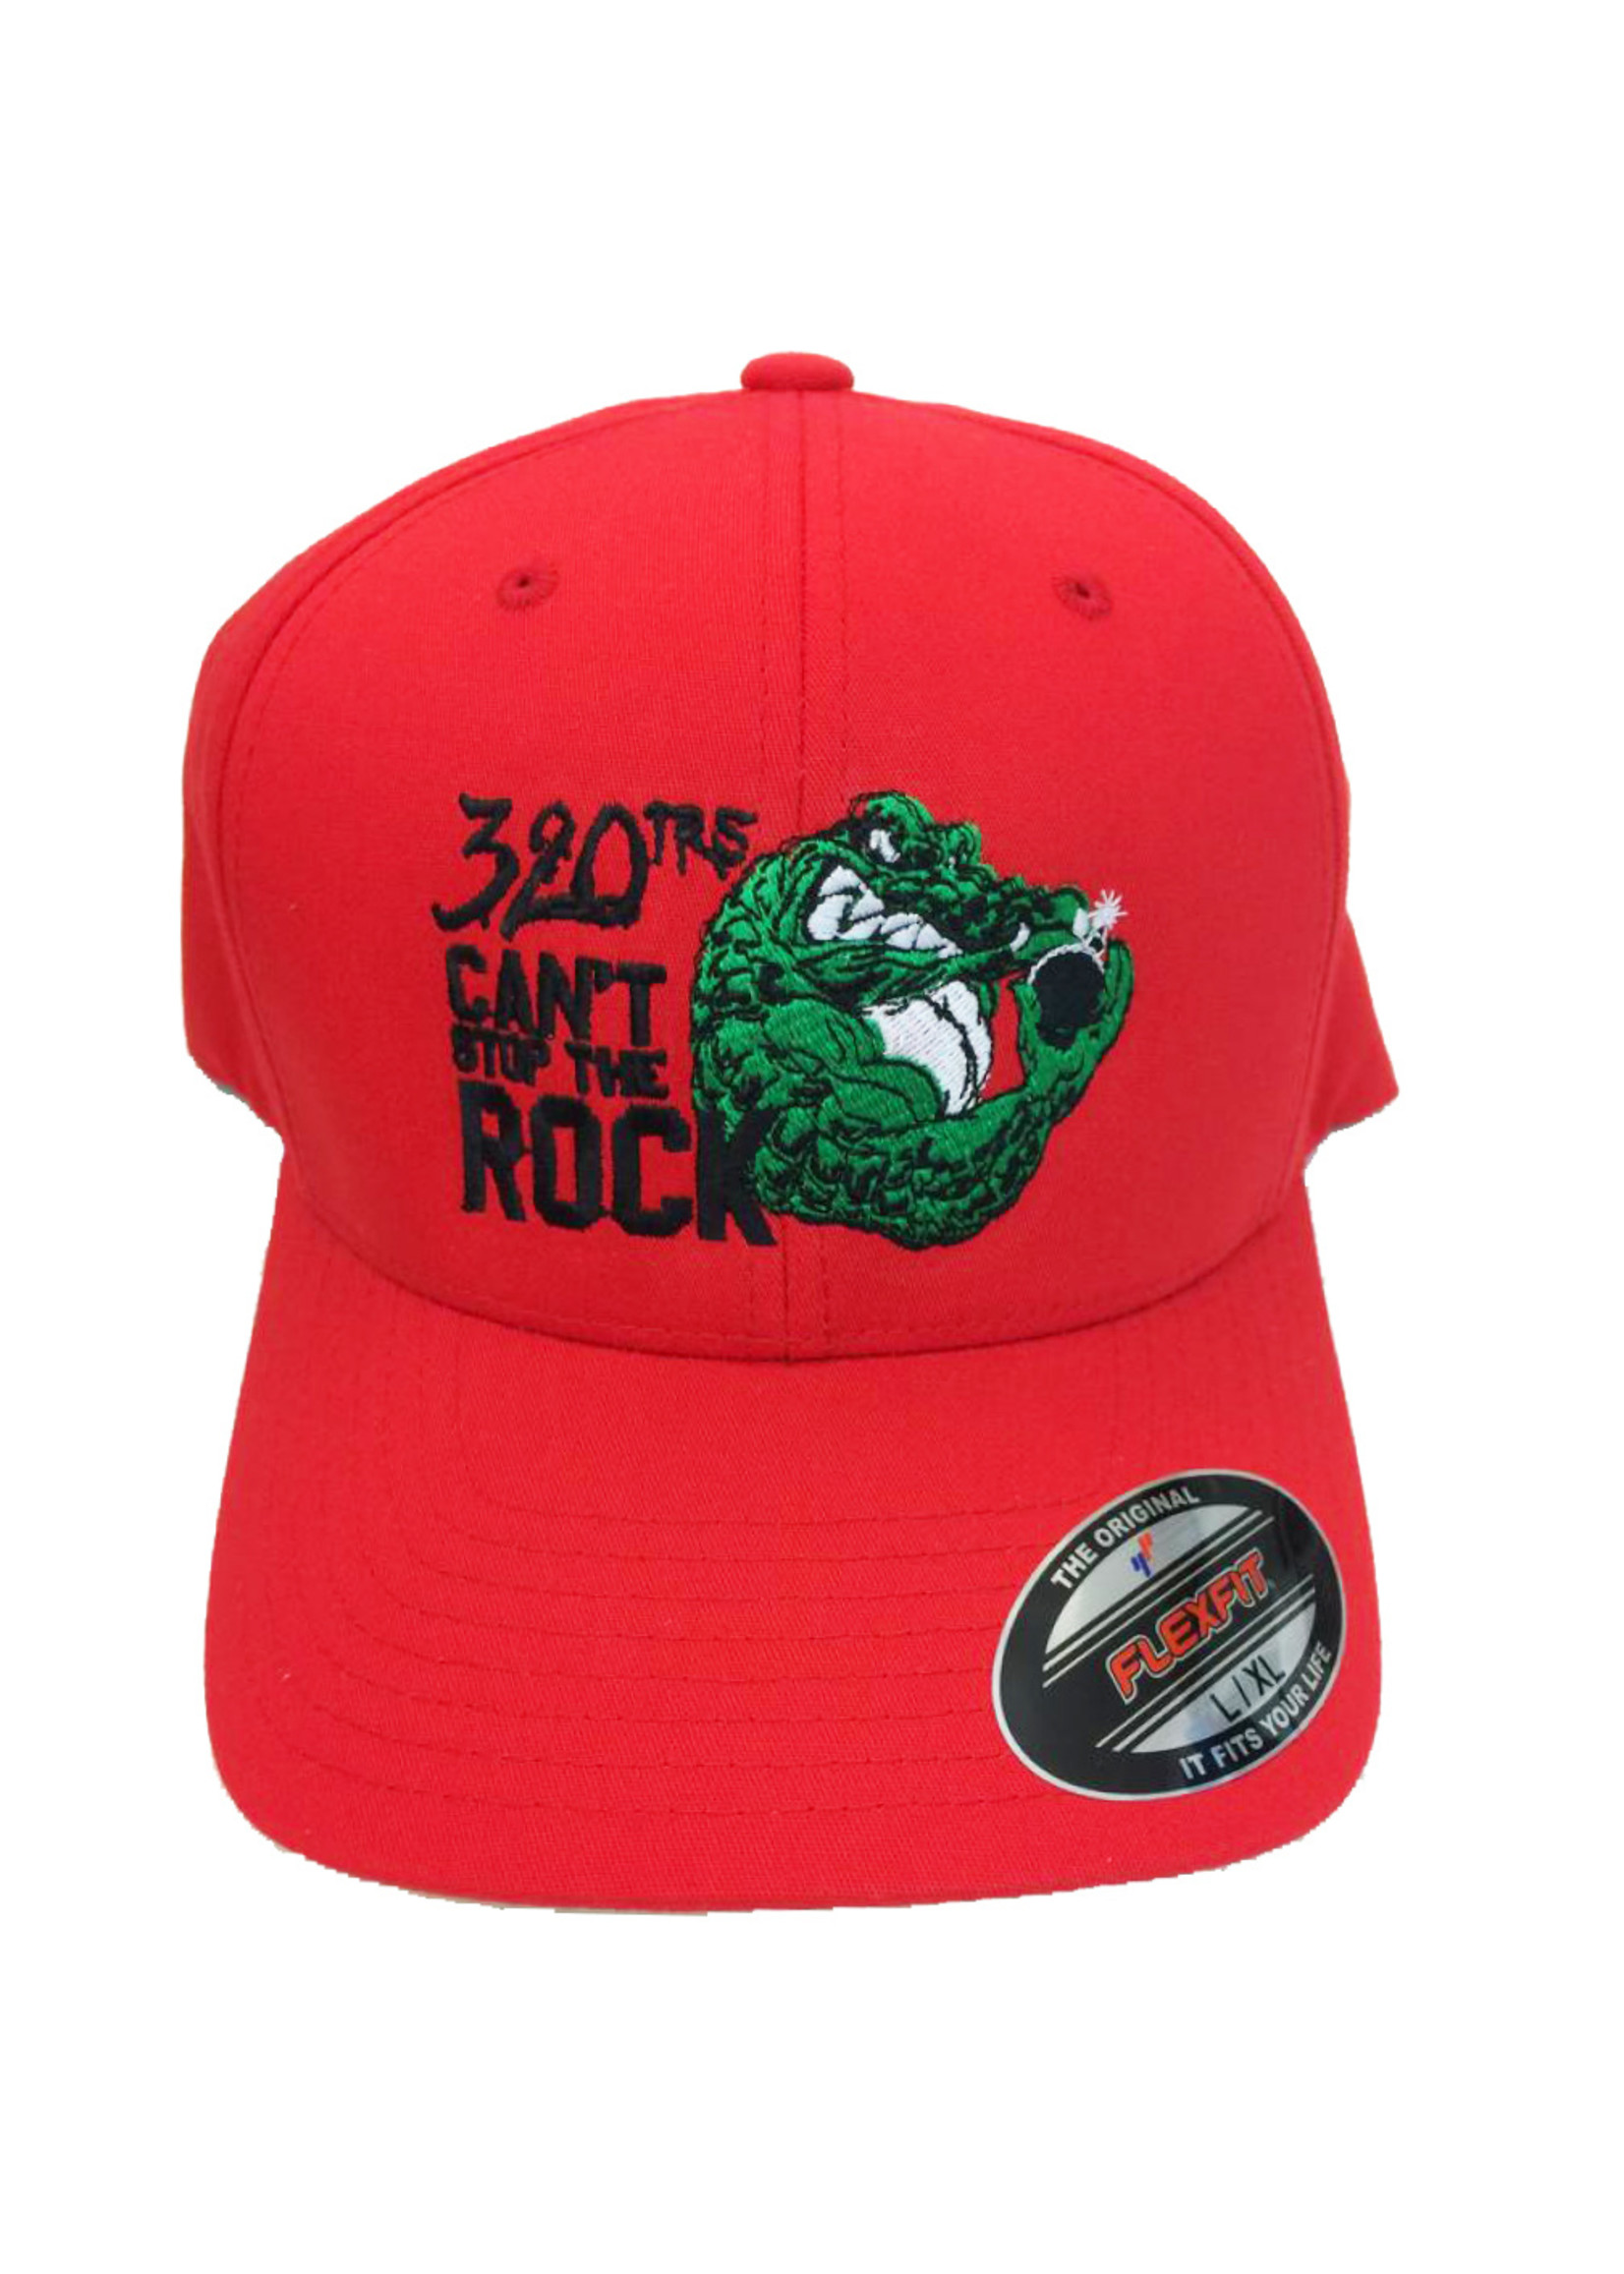 320th Gators Cap